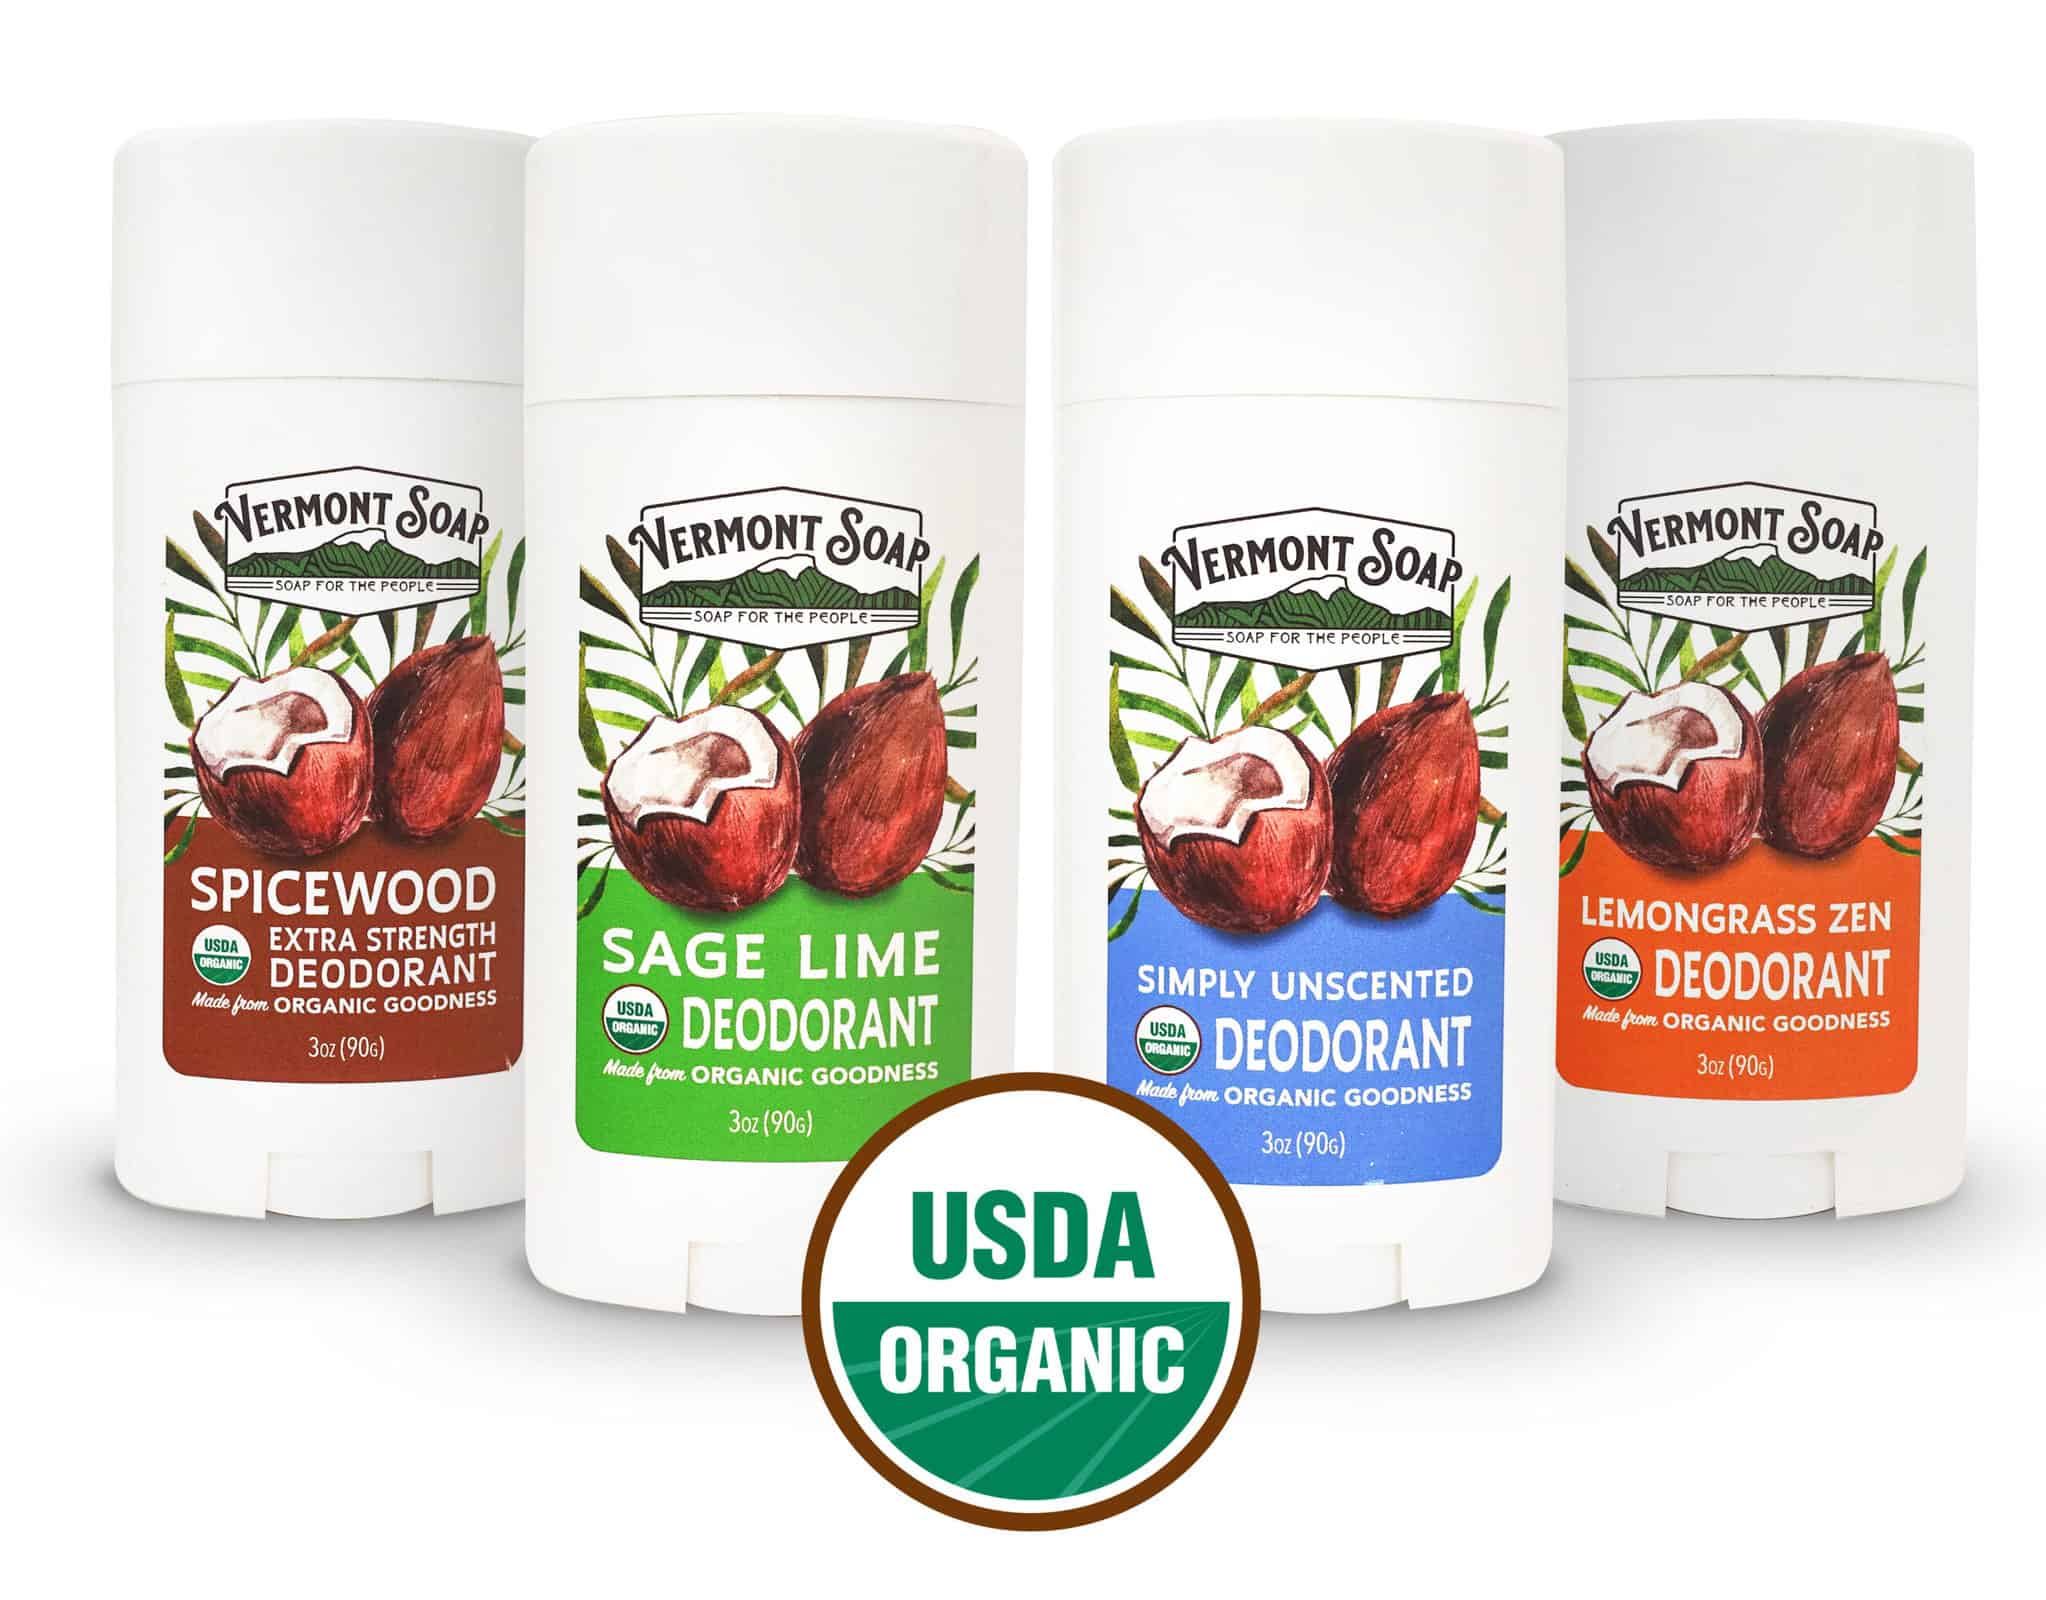 Vermont Soap Organic Deodorant